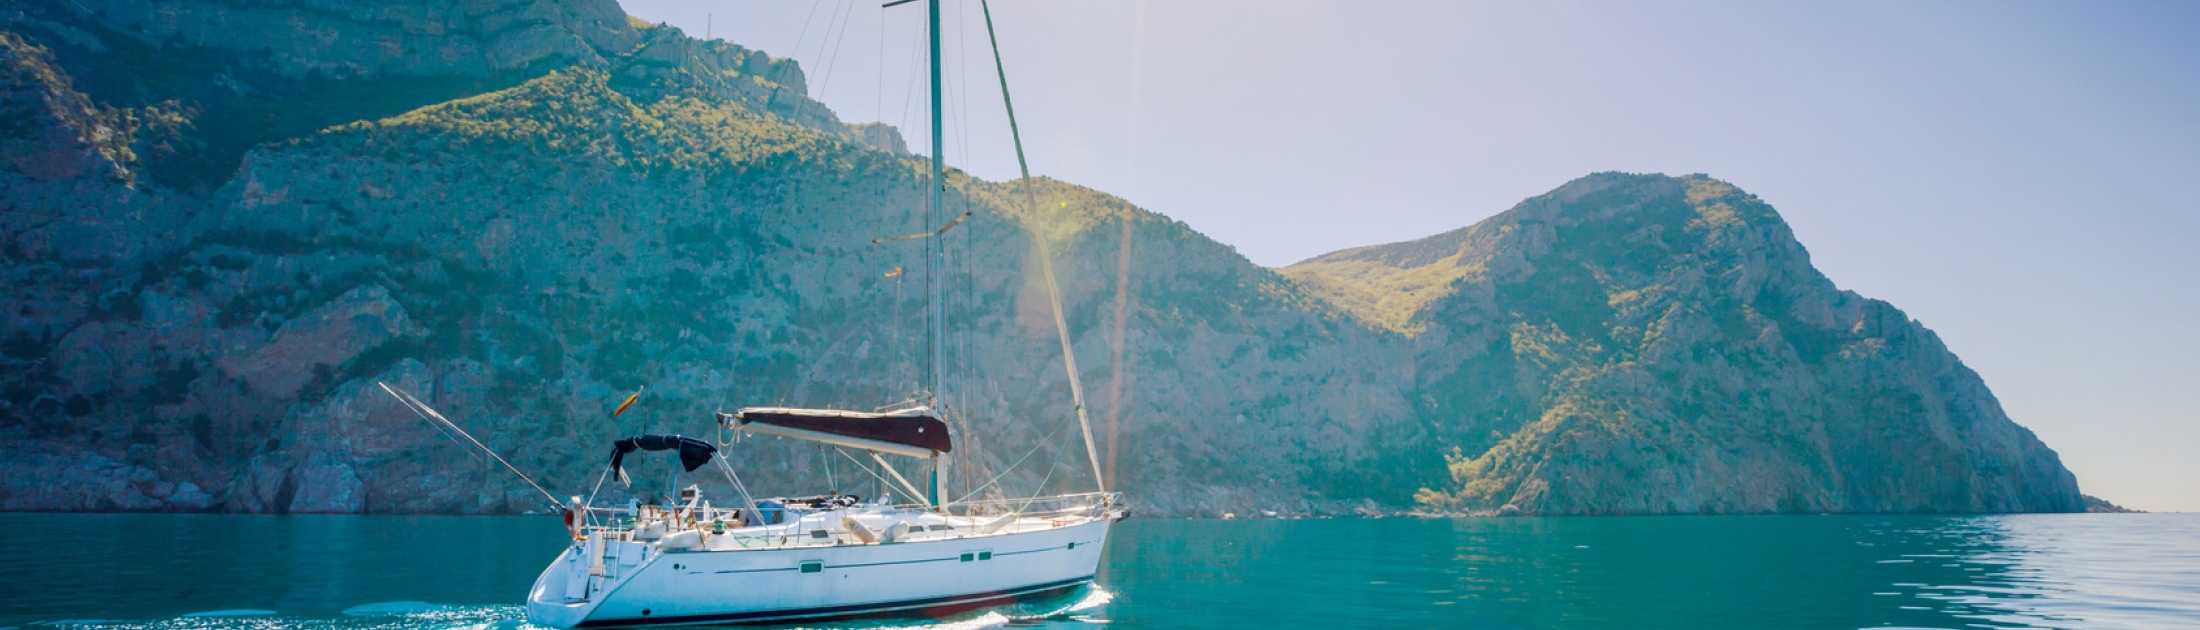 Discover Porquerolles island on board